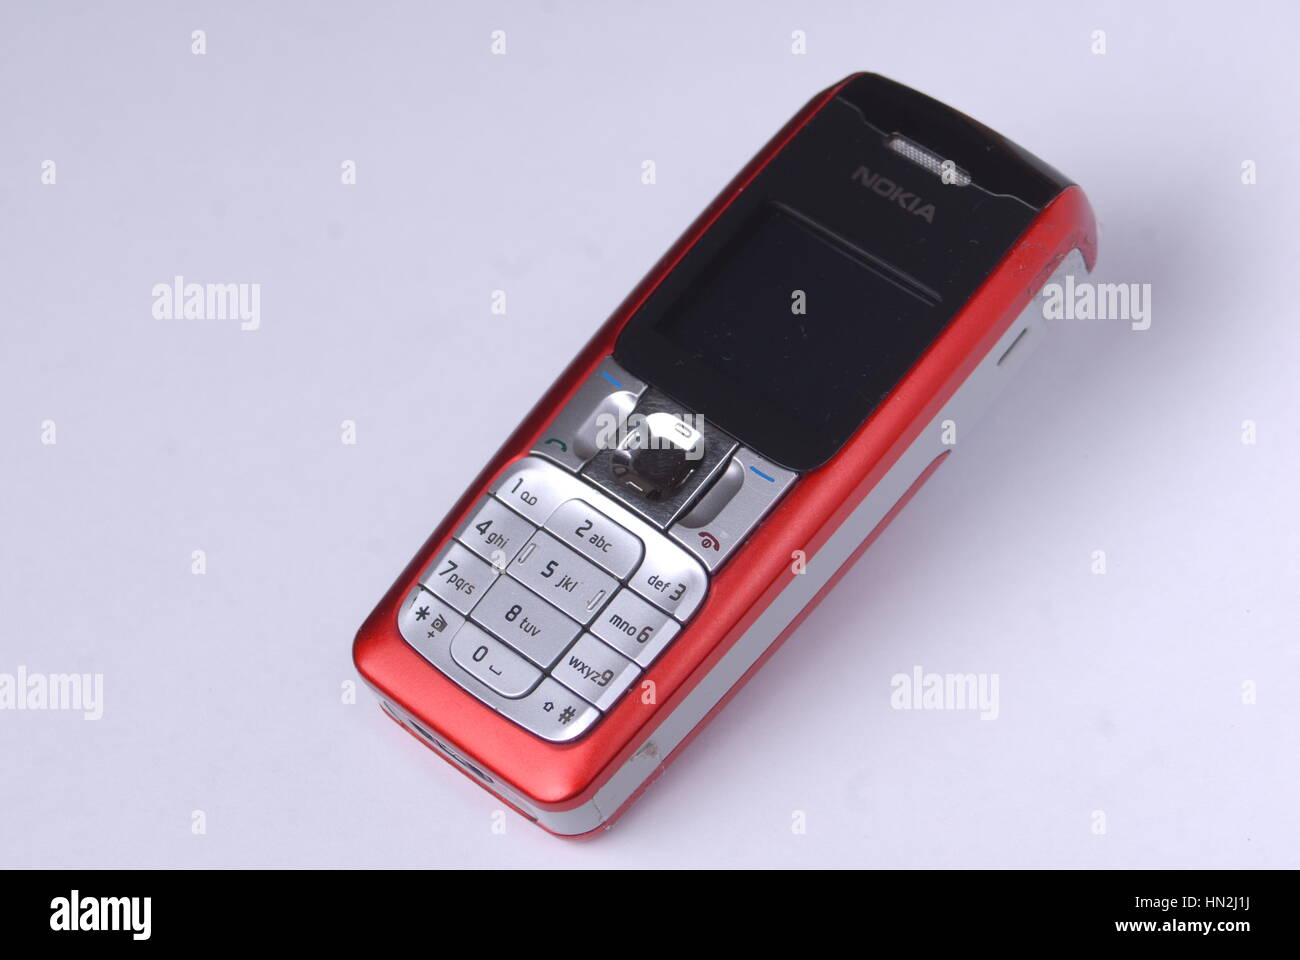 Red Nokia Mobiltelefon auf weißem Hintergrund Stockfoto